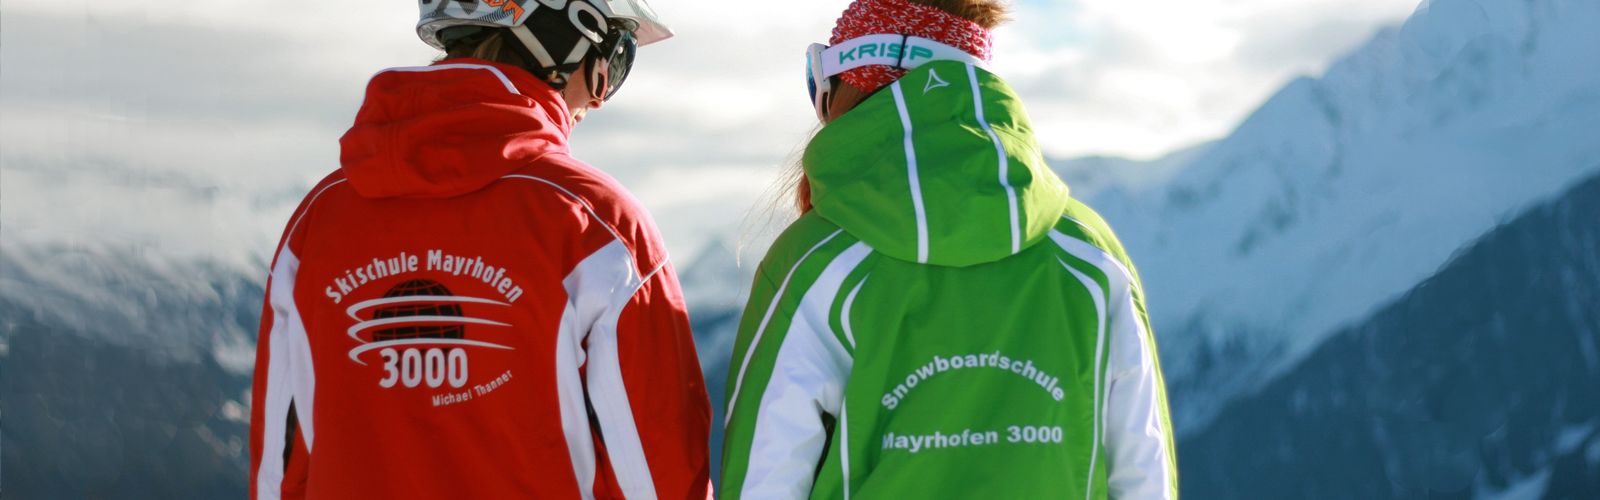 Skikurse buchen bei der Skischule Mayrhofen 3000